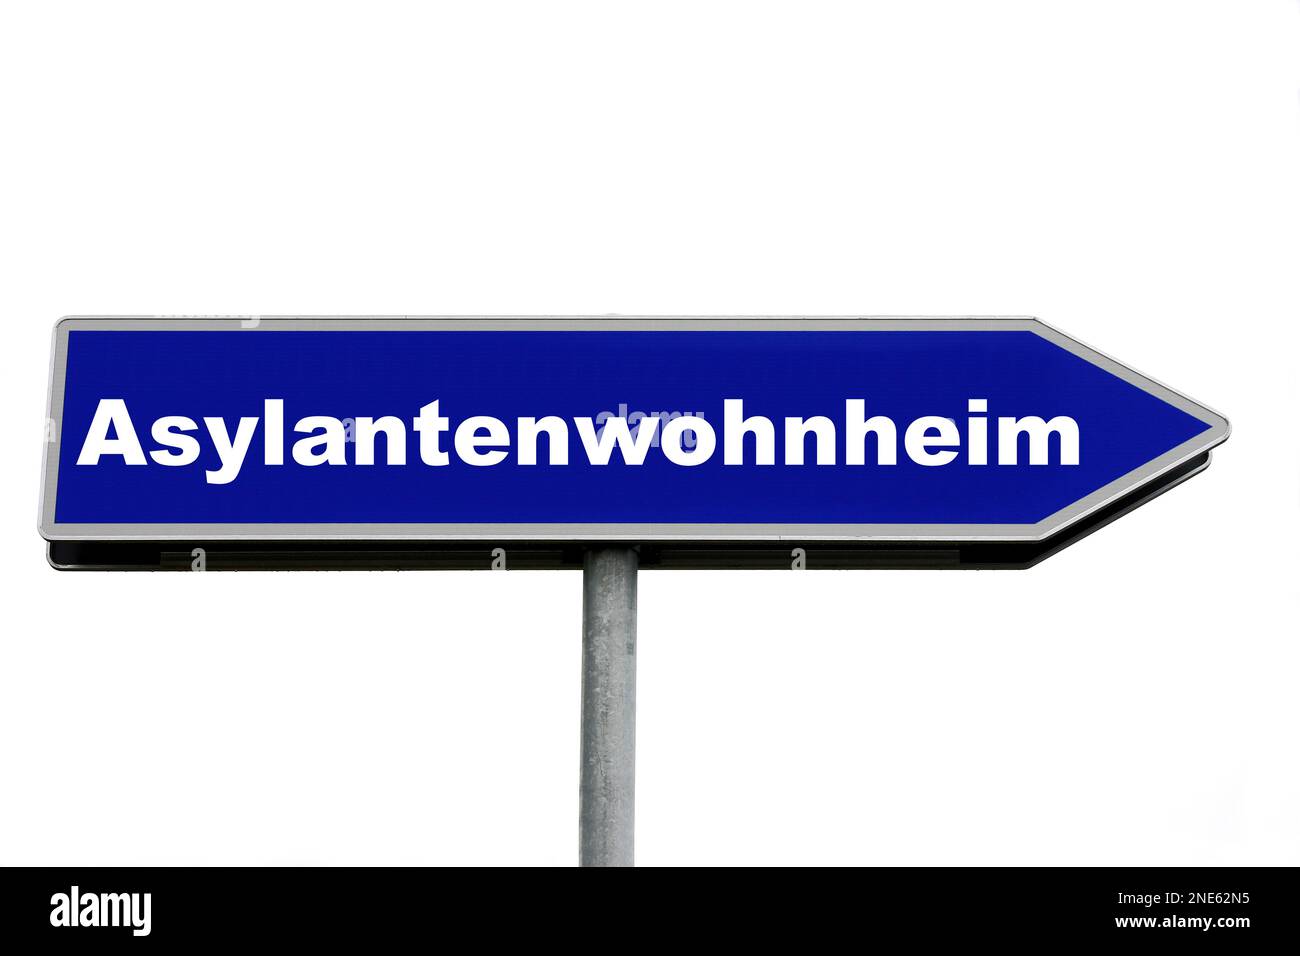 Lettre bleue indiquant Asylantenwohnheim, auberge de demandeurs d'asile Banque D'Images